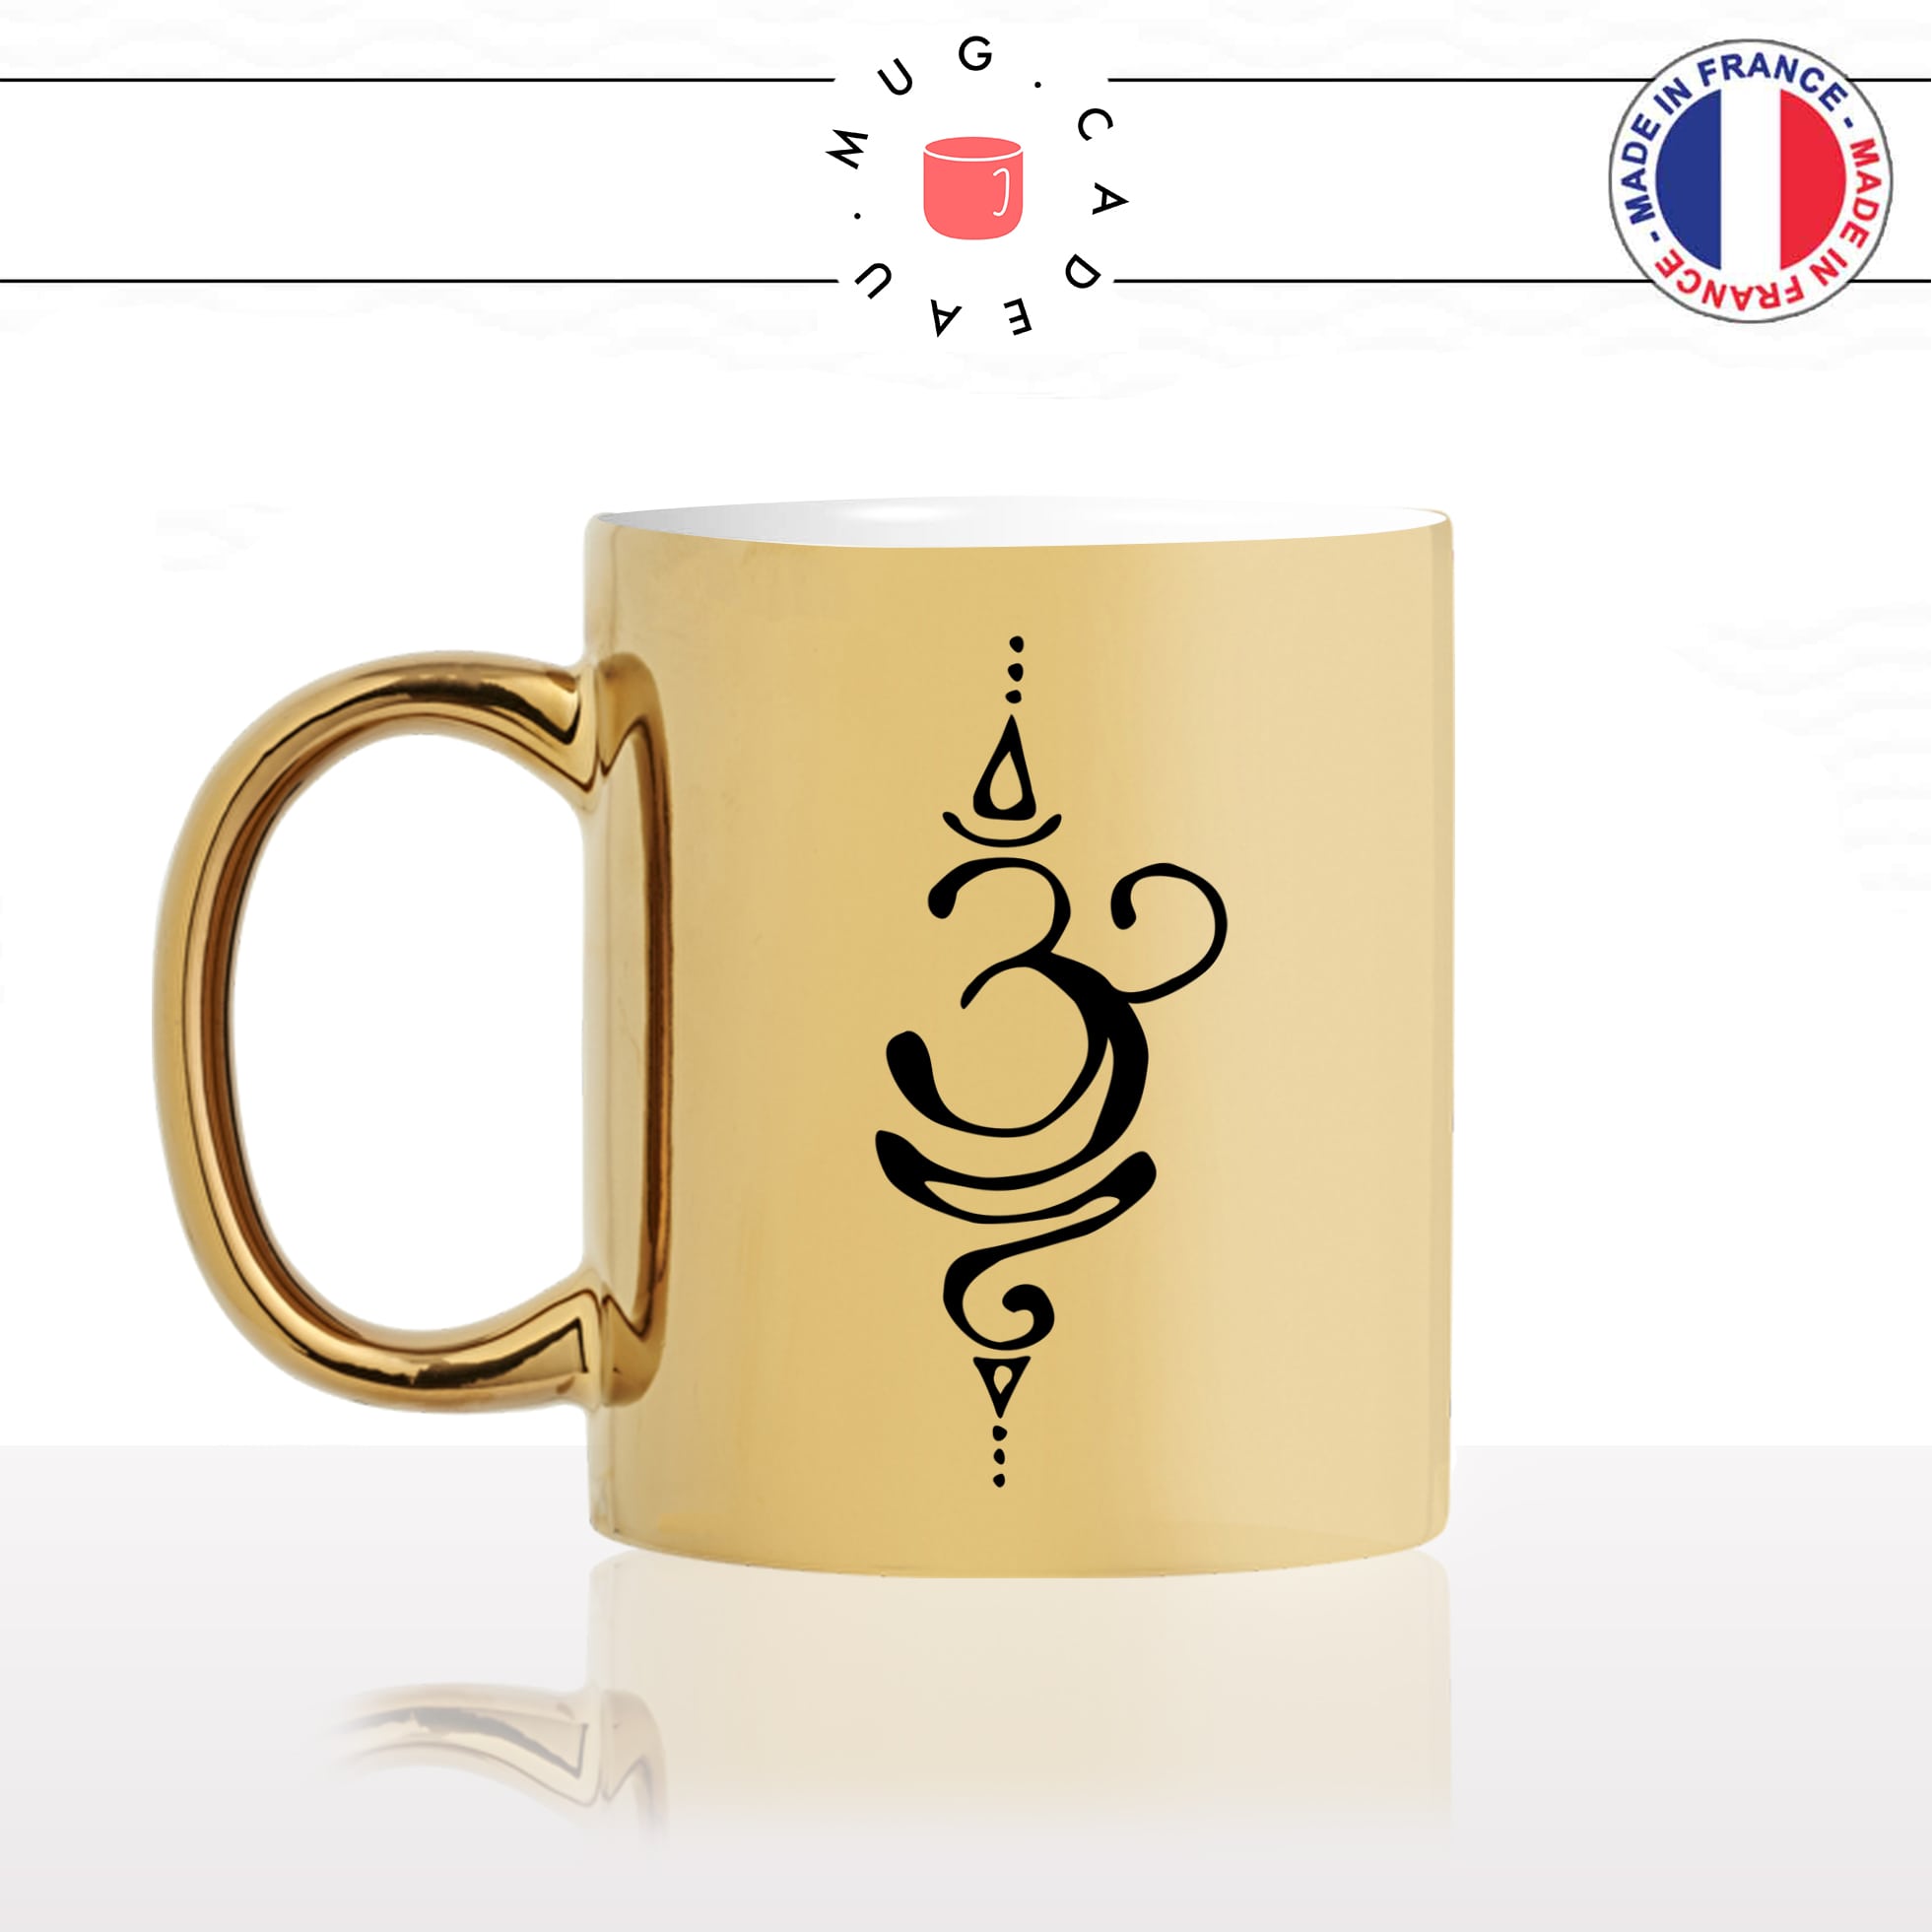 mug-tasse-gold-or-doré-symbol-bouddhiste-bouddha-buddha-indou-meditation-yoga-forme-dessin-original-fun-idée-cadeau-personnalisé-café-thé-min